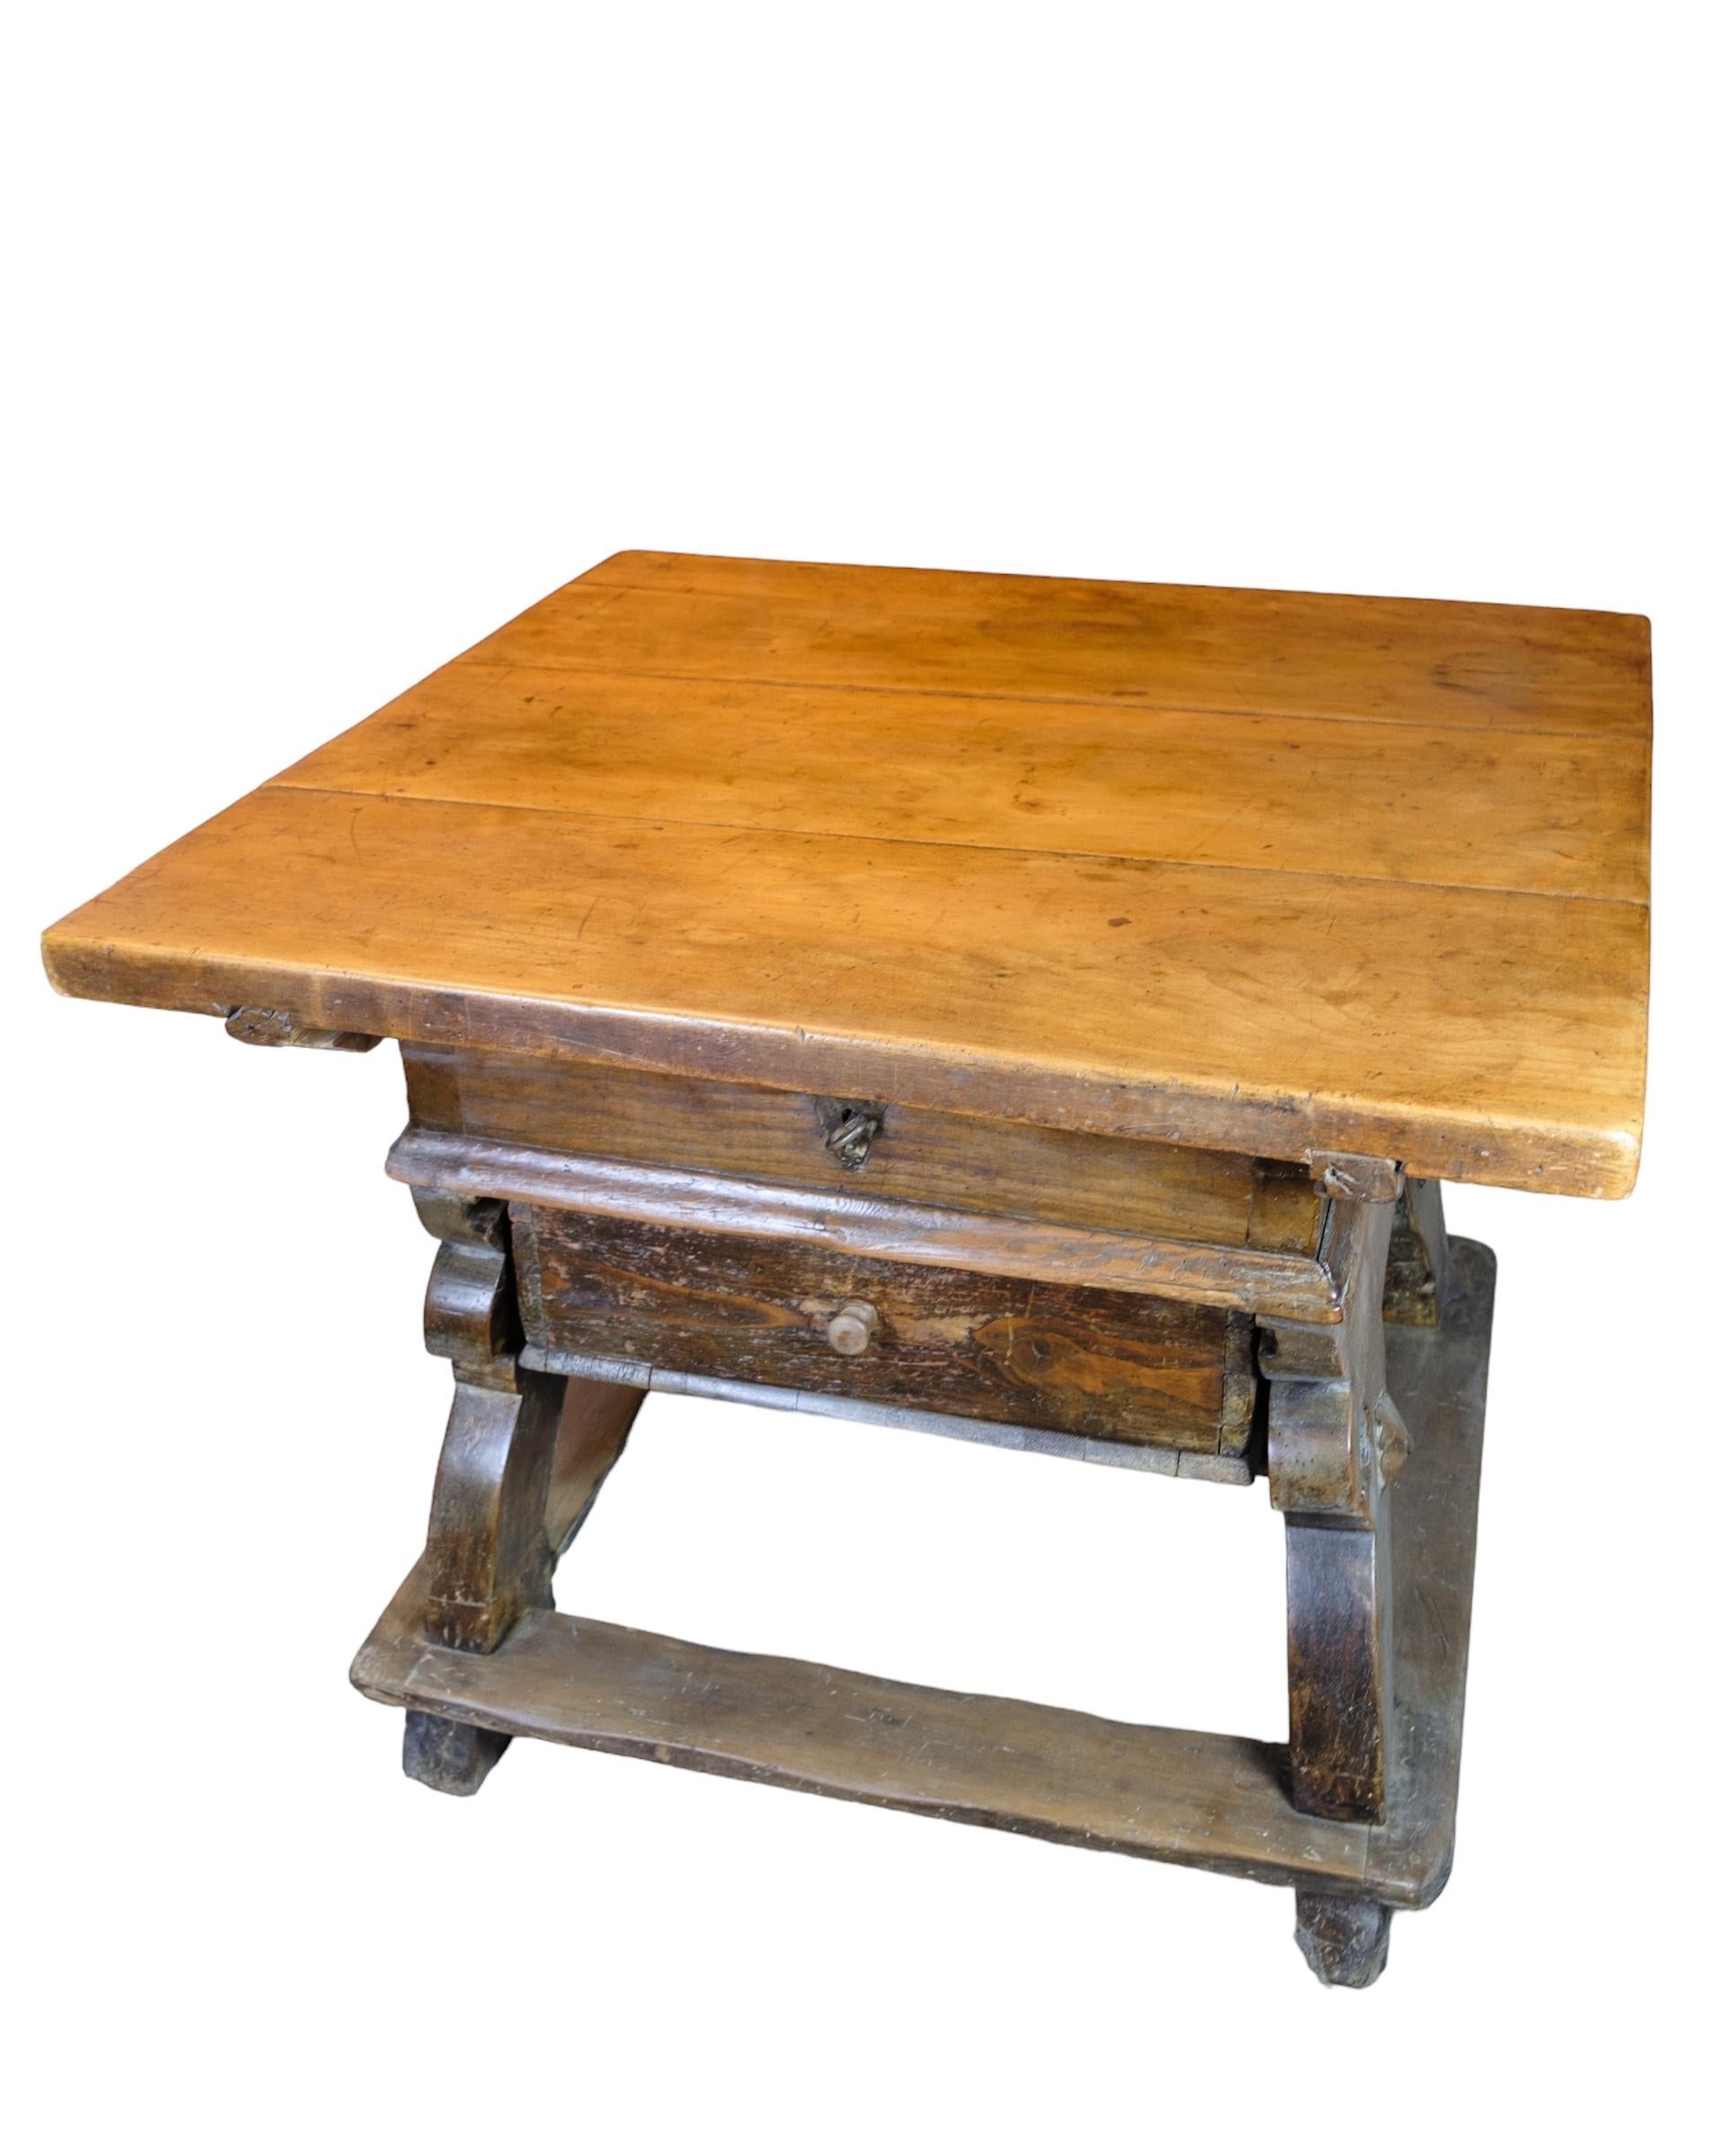 Table à fromage suisse en chêne avec un compartiment secret sous le plateau caché par un tiroir des années 1720.
Mesures en cm : H:76 L:100 P:100